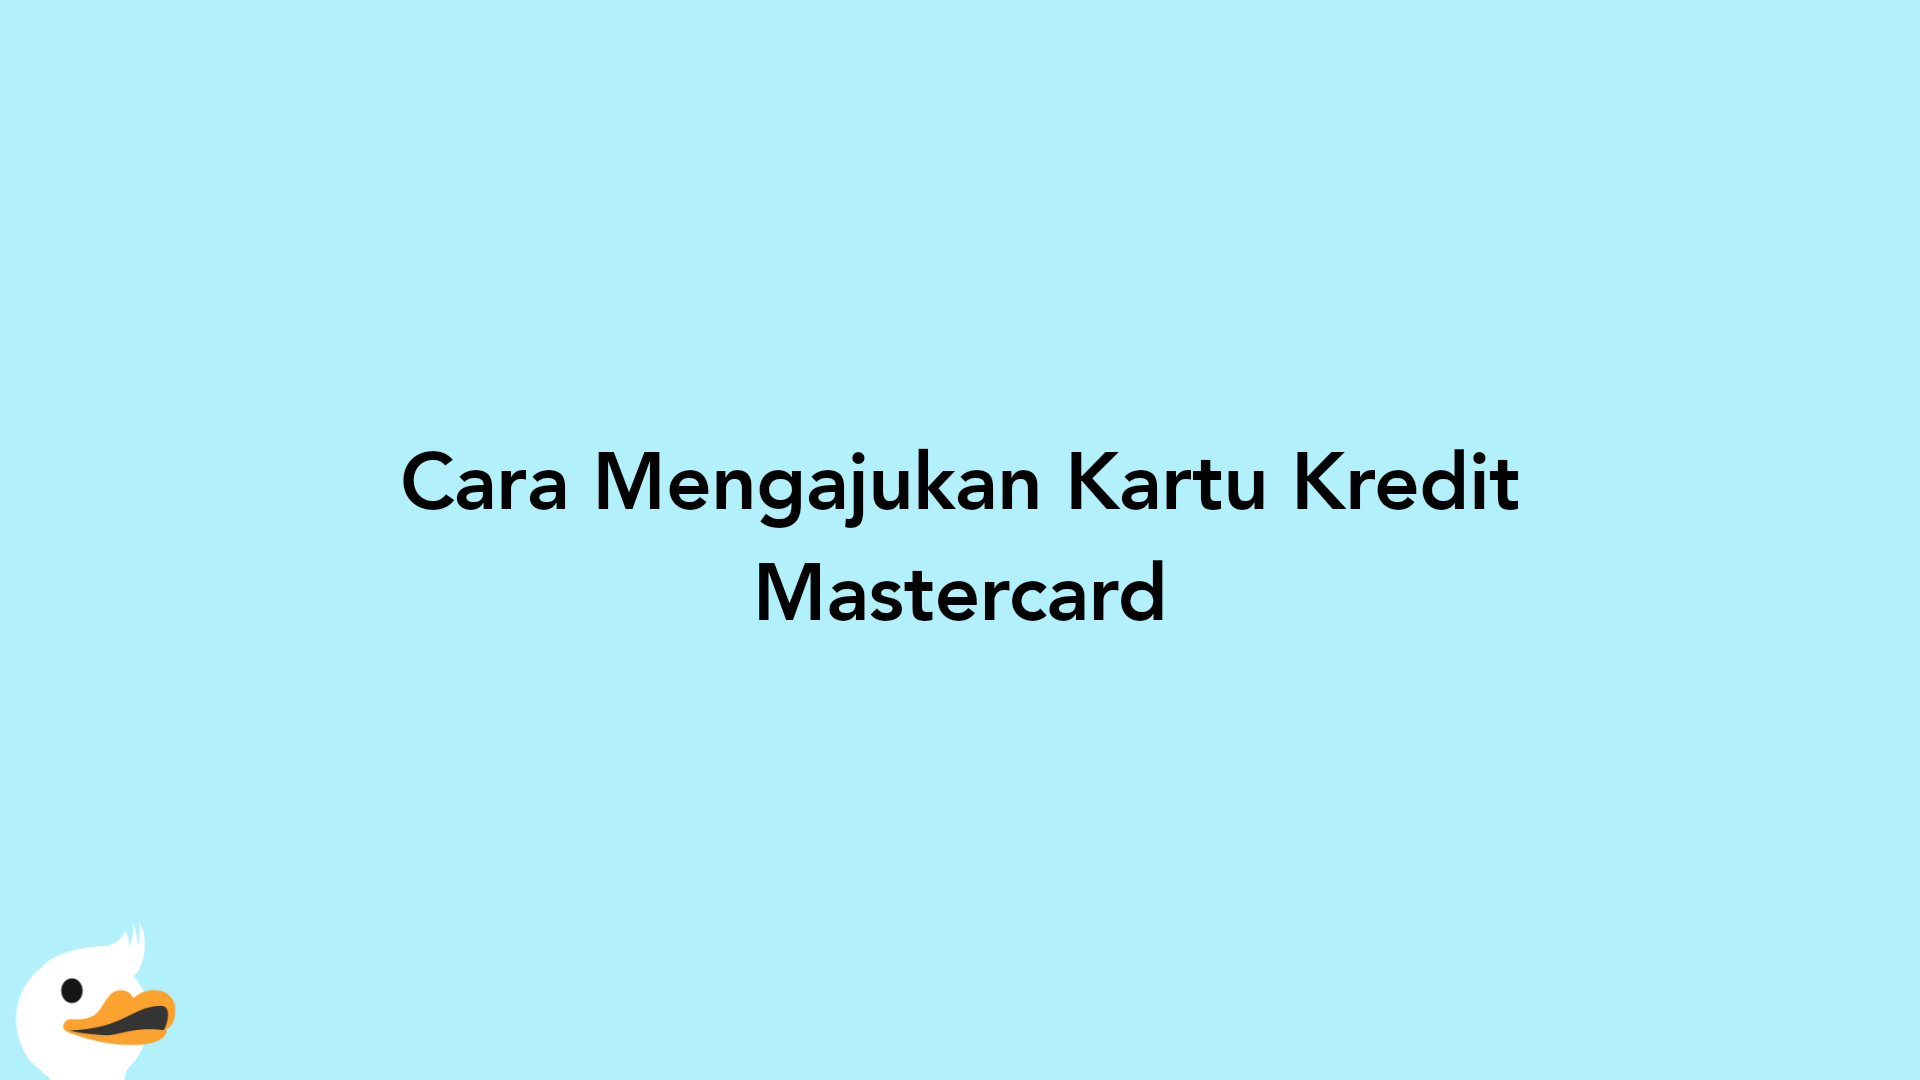 Cara Mengajukan Kartu Kredit Mastercard